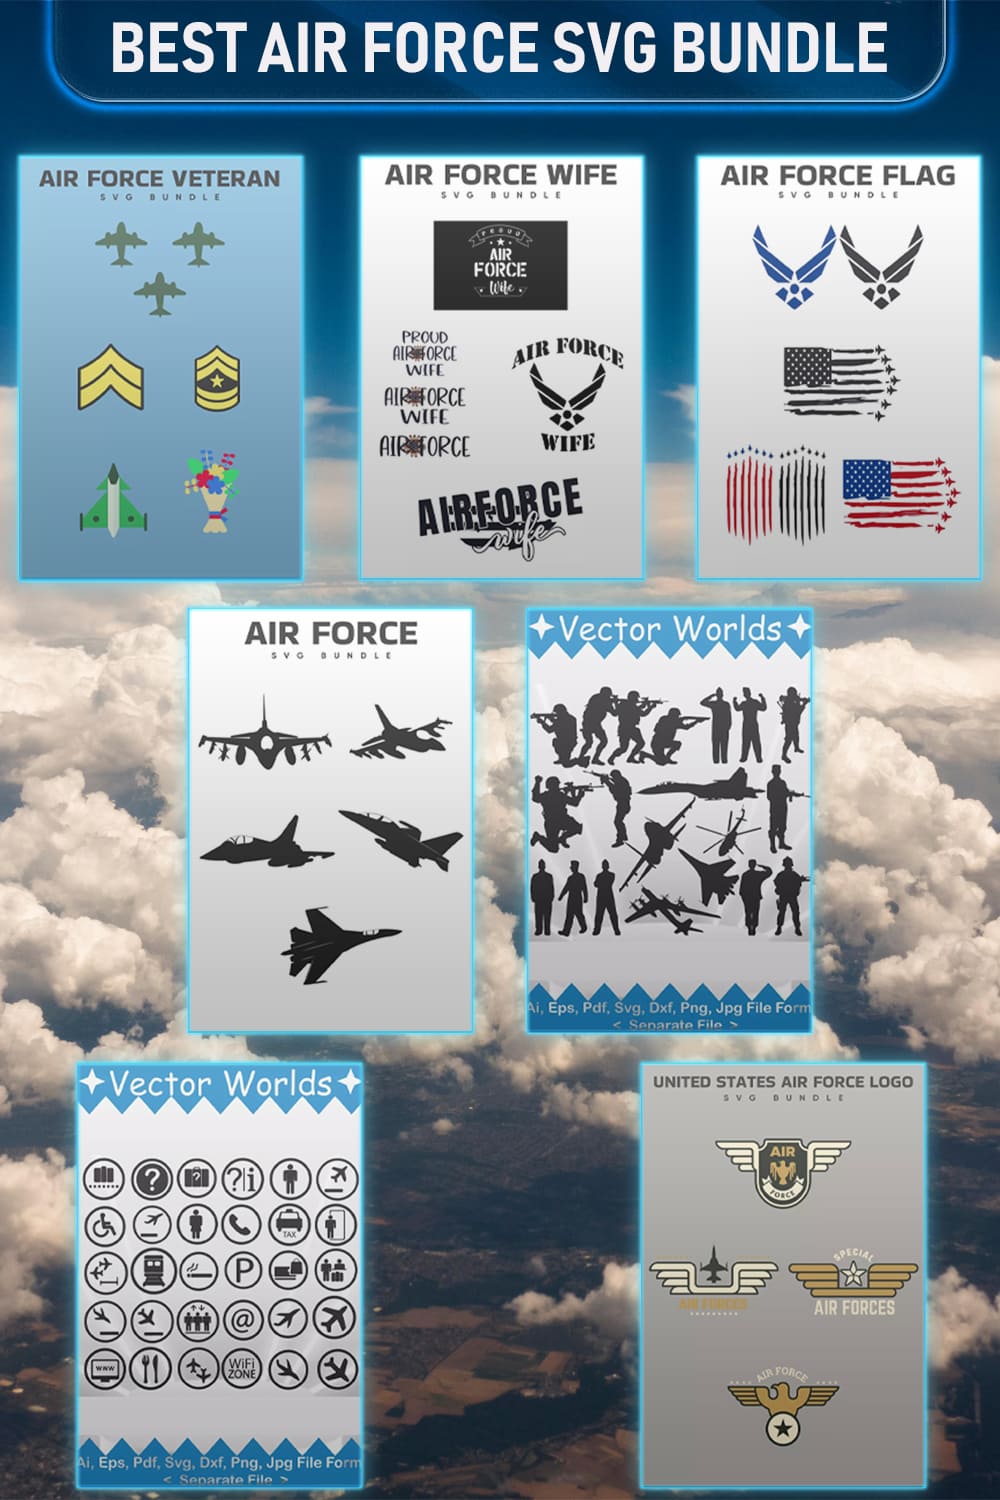 Best Air Force SVG Bundle Pinterest.